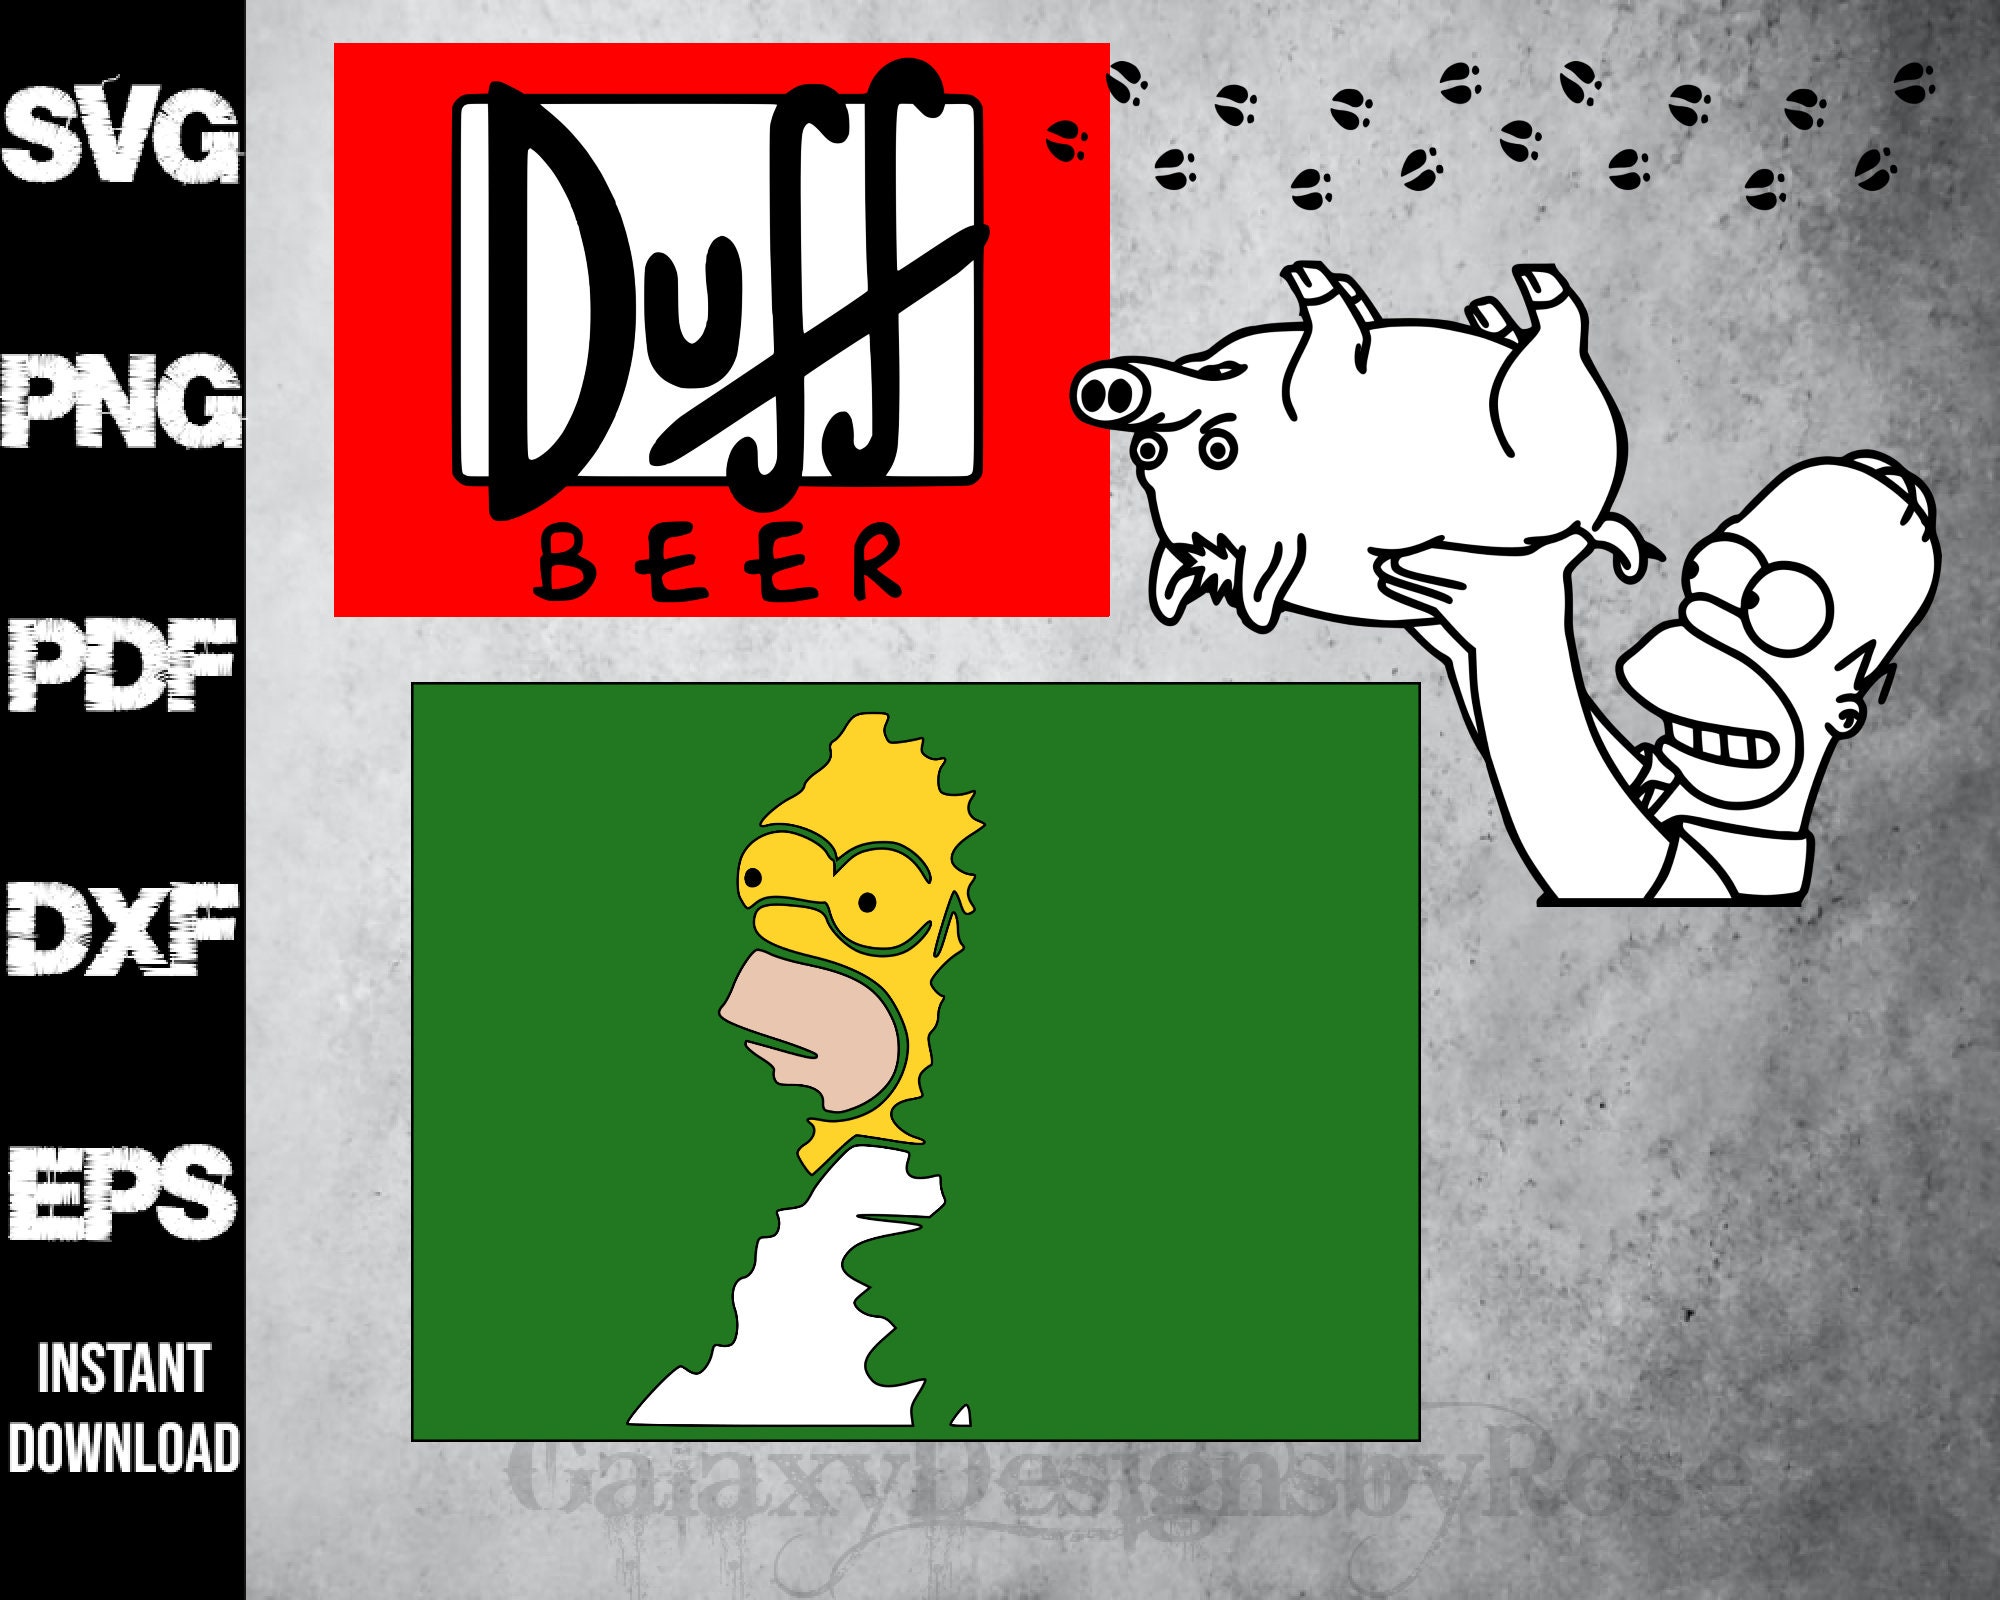 Duff Beer Koozie / Simpson Beer – Farmhouse Fabrication